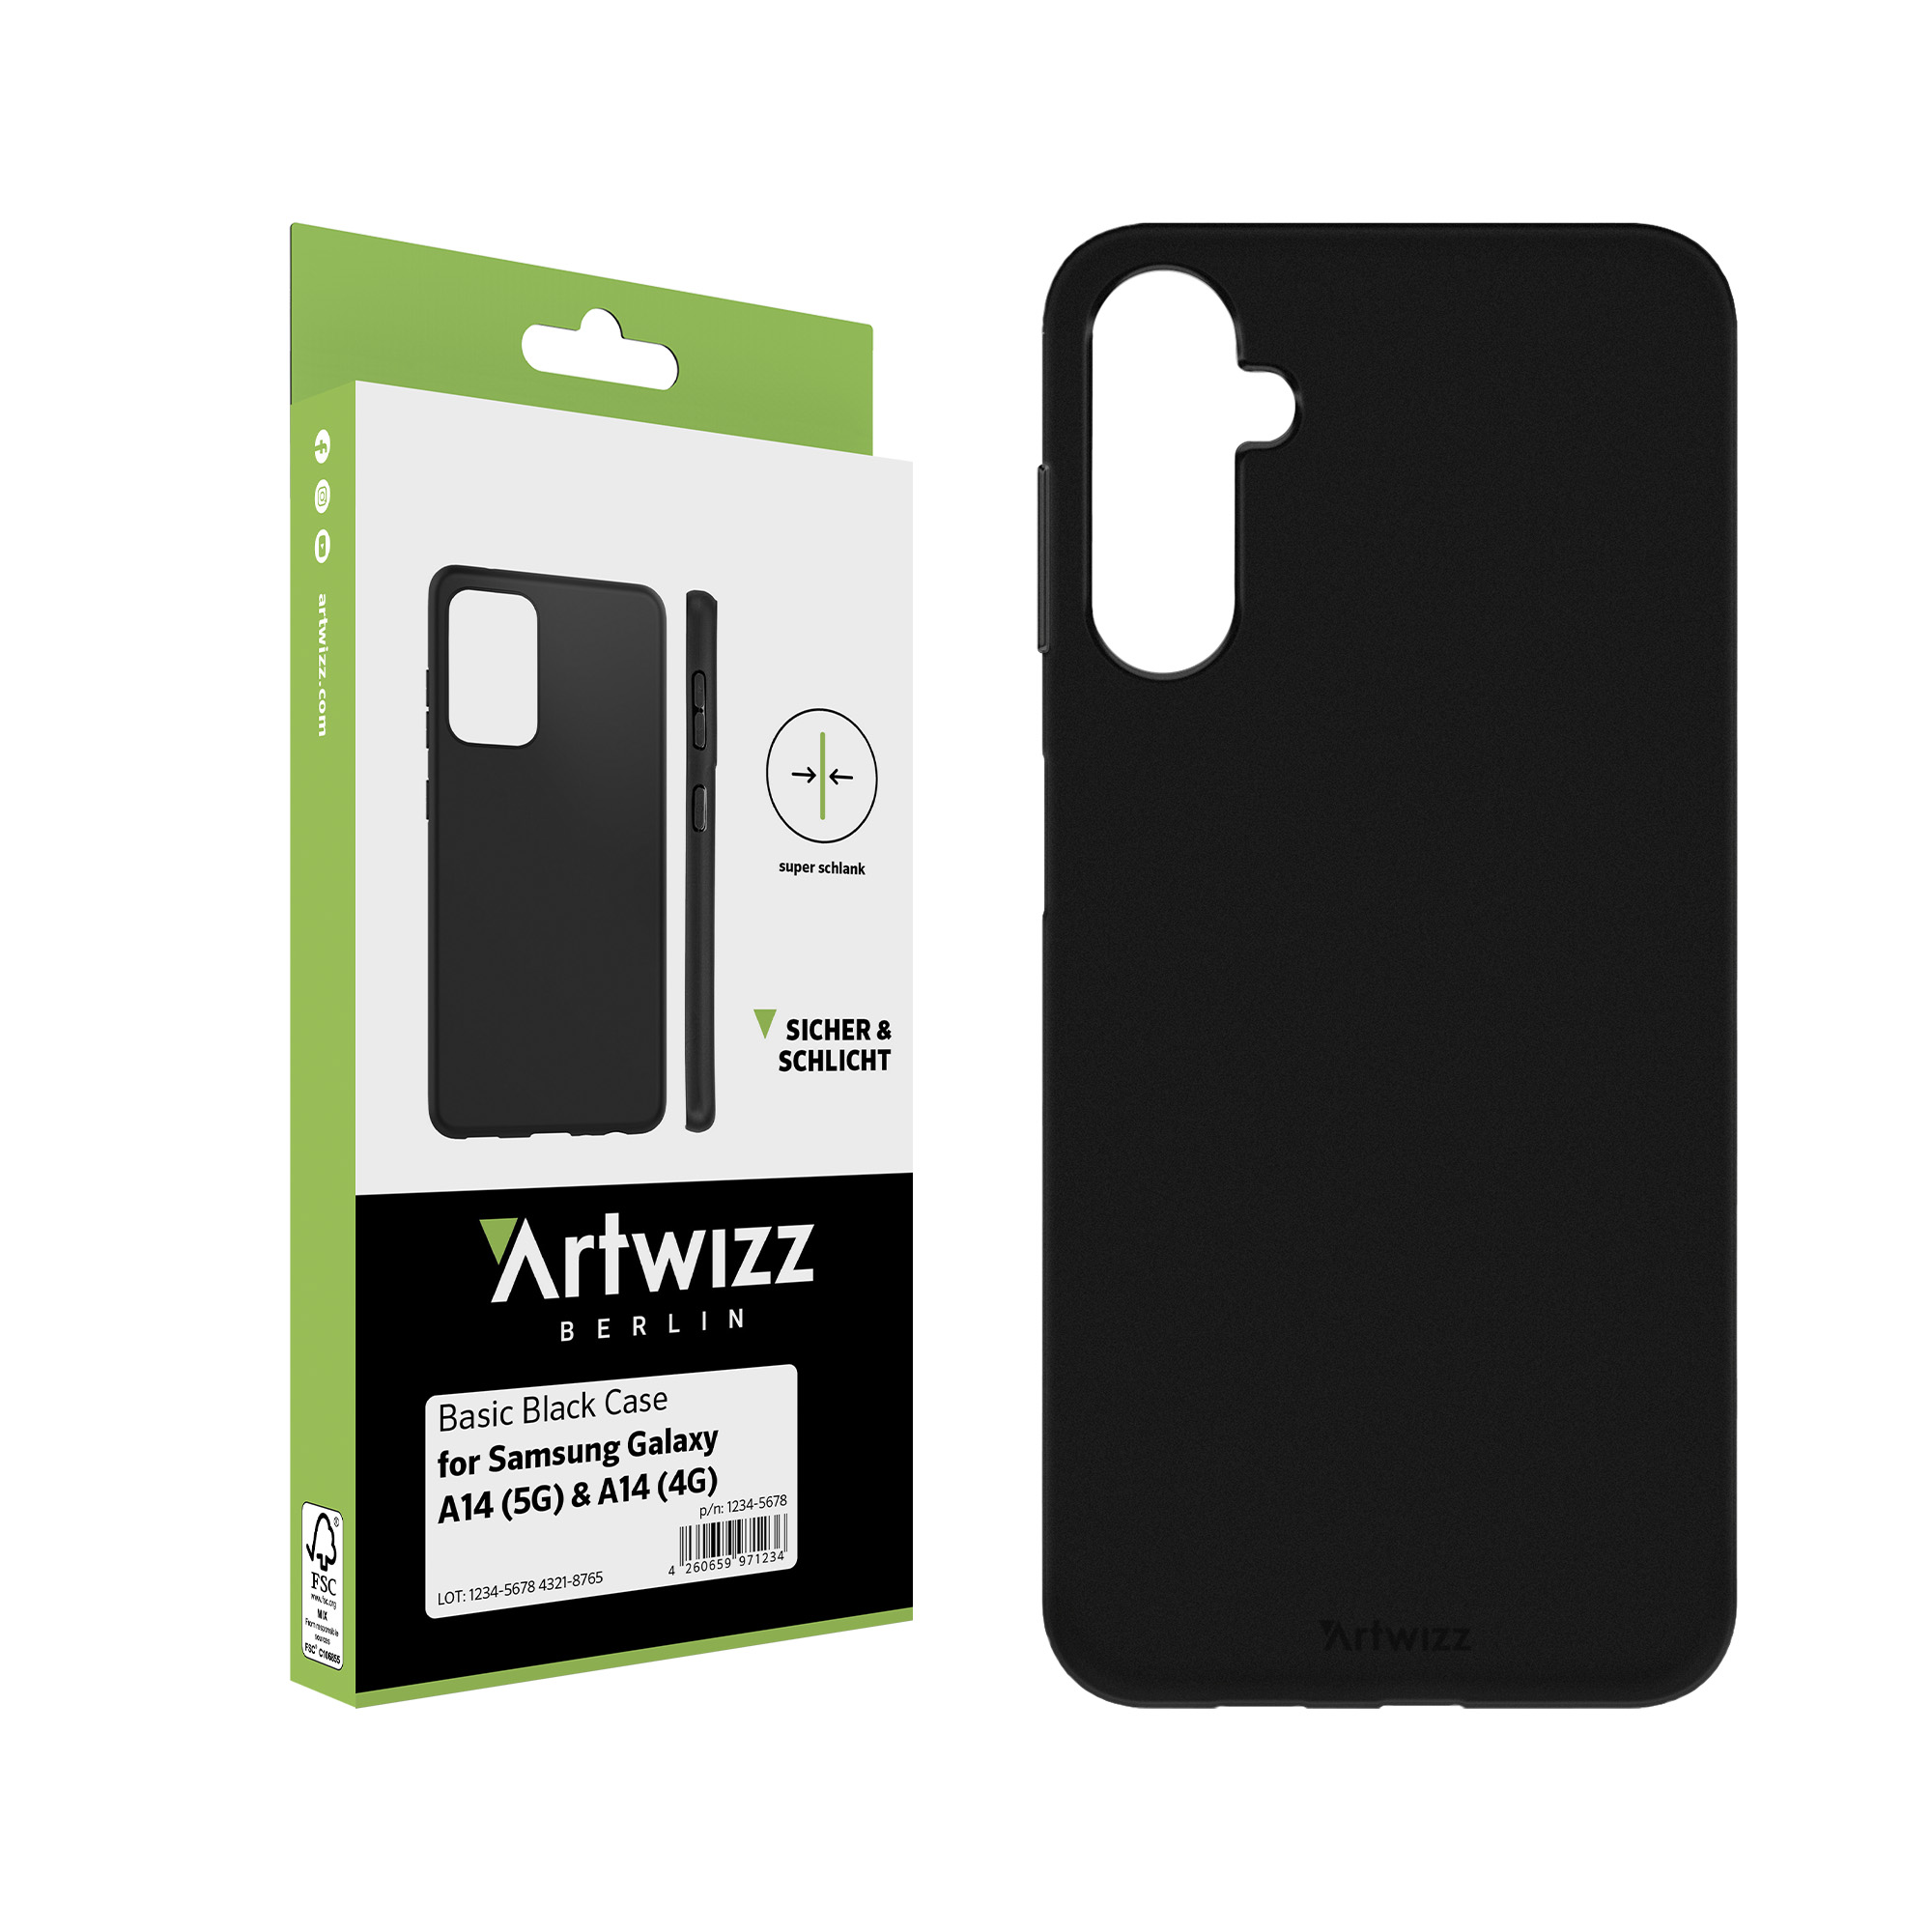 Galaxy ARTWIZZ A14 Basic Backcover, Samsung, (5G/4G), Schwarz Galaxy A14 Black (5G/4G), Samsung für Case